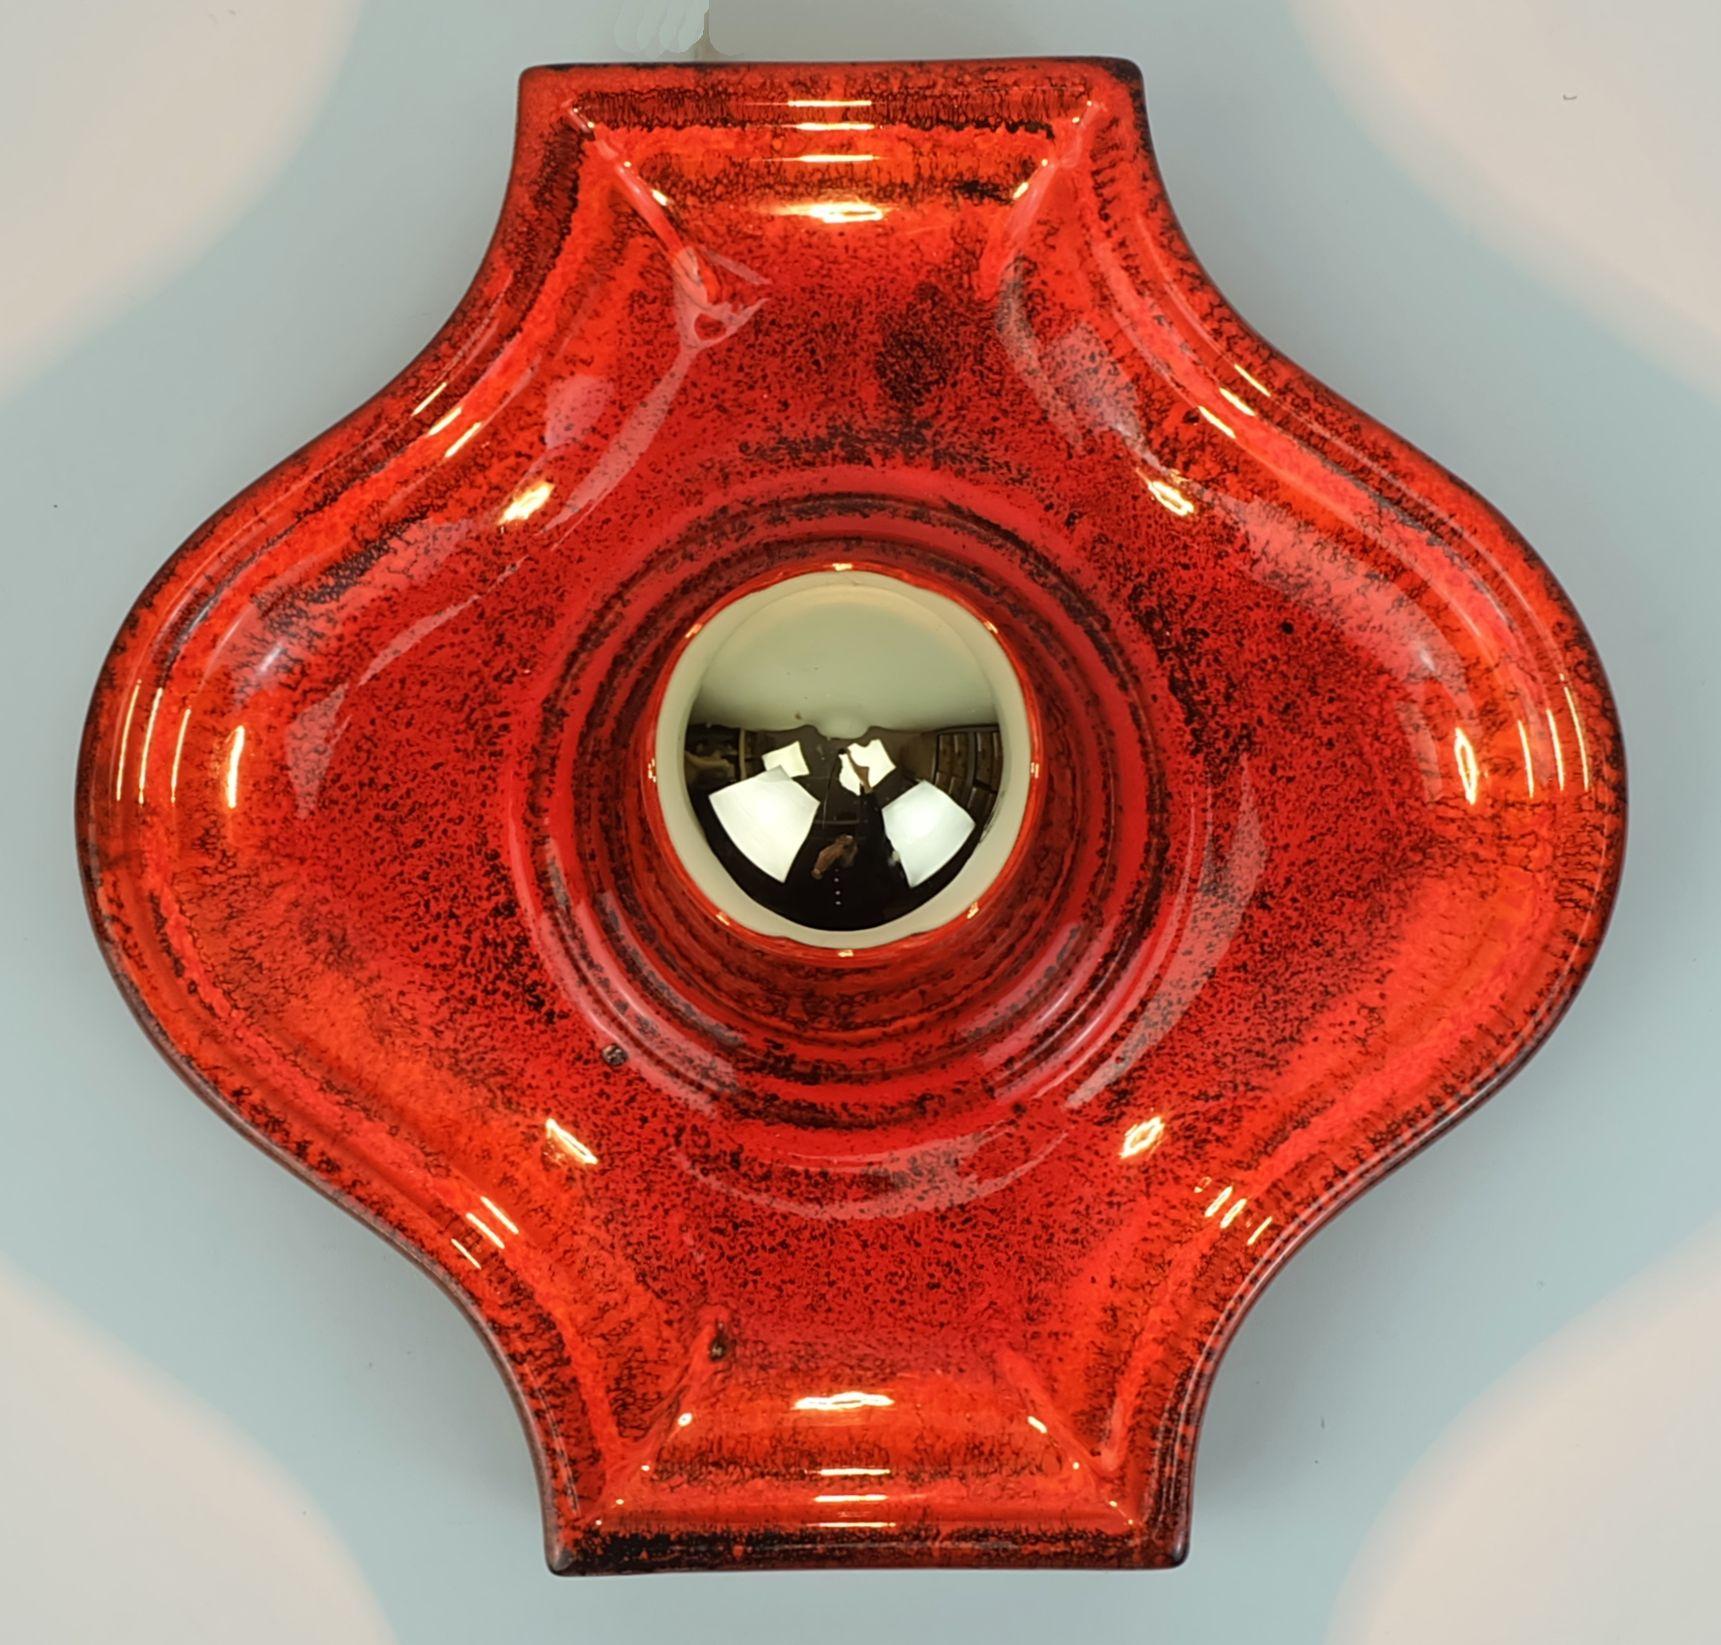 Keramik-Wandleuchte aus der Mitte des Jahrhunderts, hergestellt in den späten 1960er bis frühen 1970er Jahren. Glänzende Glasur in Rot, Orange und Schwarz. Hält 1 E27 Glühbirne (die Glühbirne auf den Bildern ist nicht im Preis enthalten).